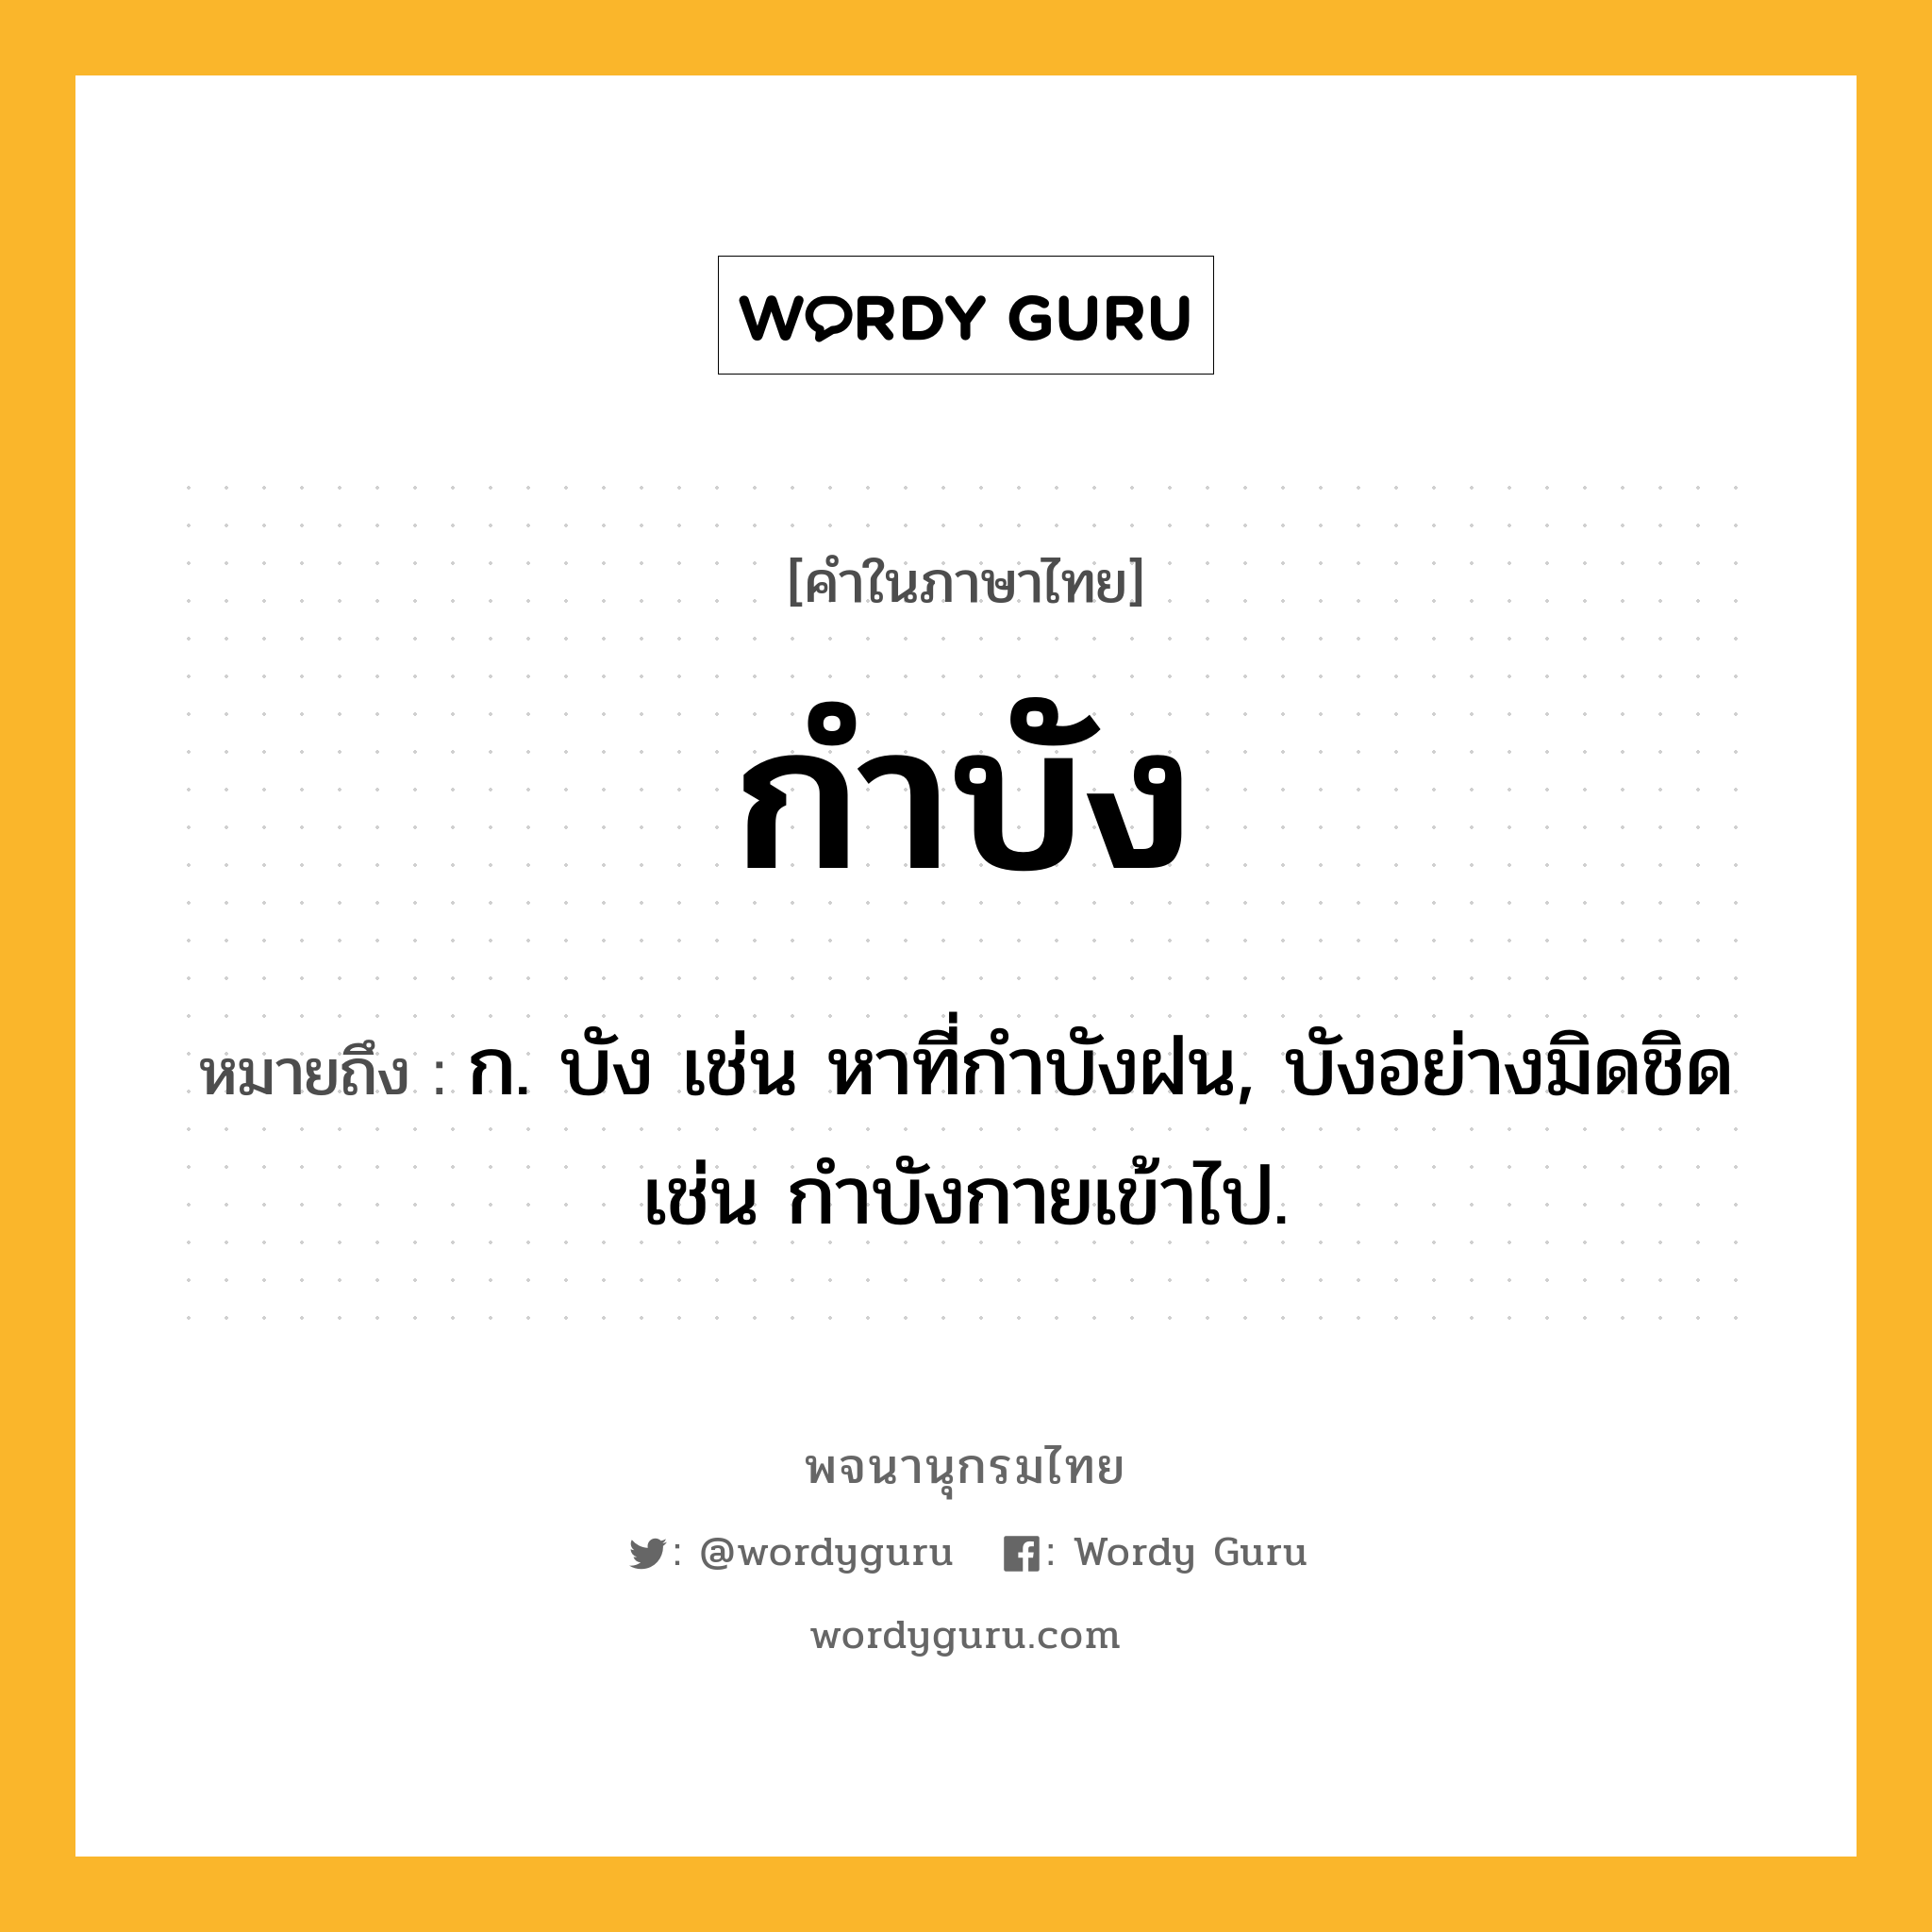 กำบัง ความหมาย หมายถึงอะไร?, คำในภาษาไทย กำบัง หมายถึง ก. บัง เช่น หาที่กําบังฝน, บังอย่างมิดชิด เช่น กําบังกายเข้าไป.